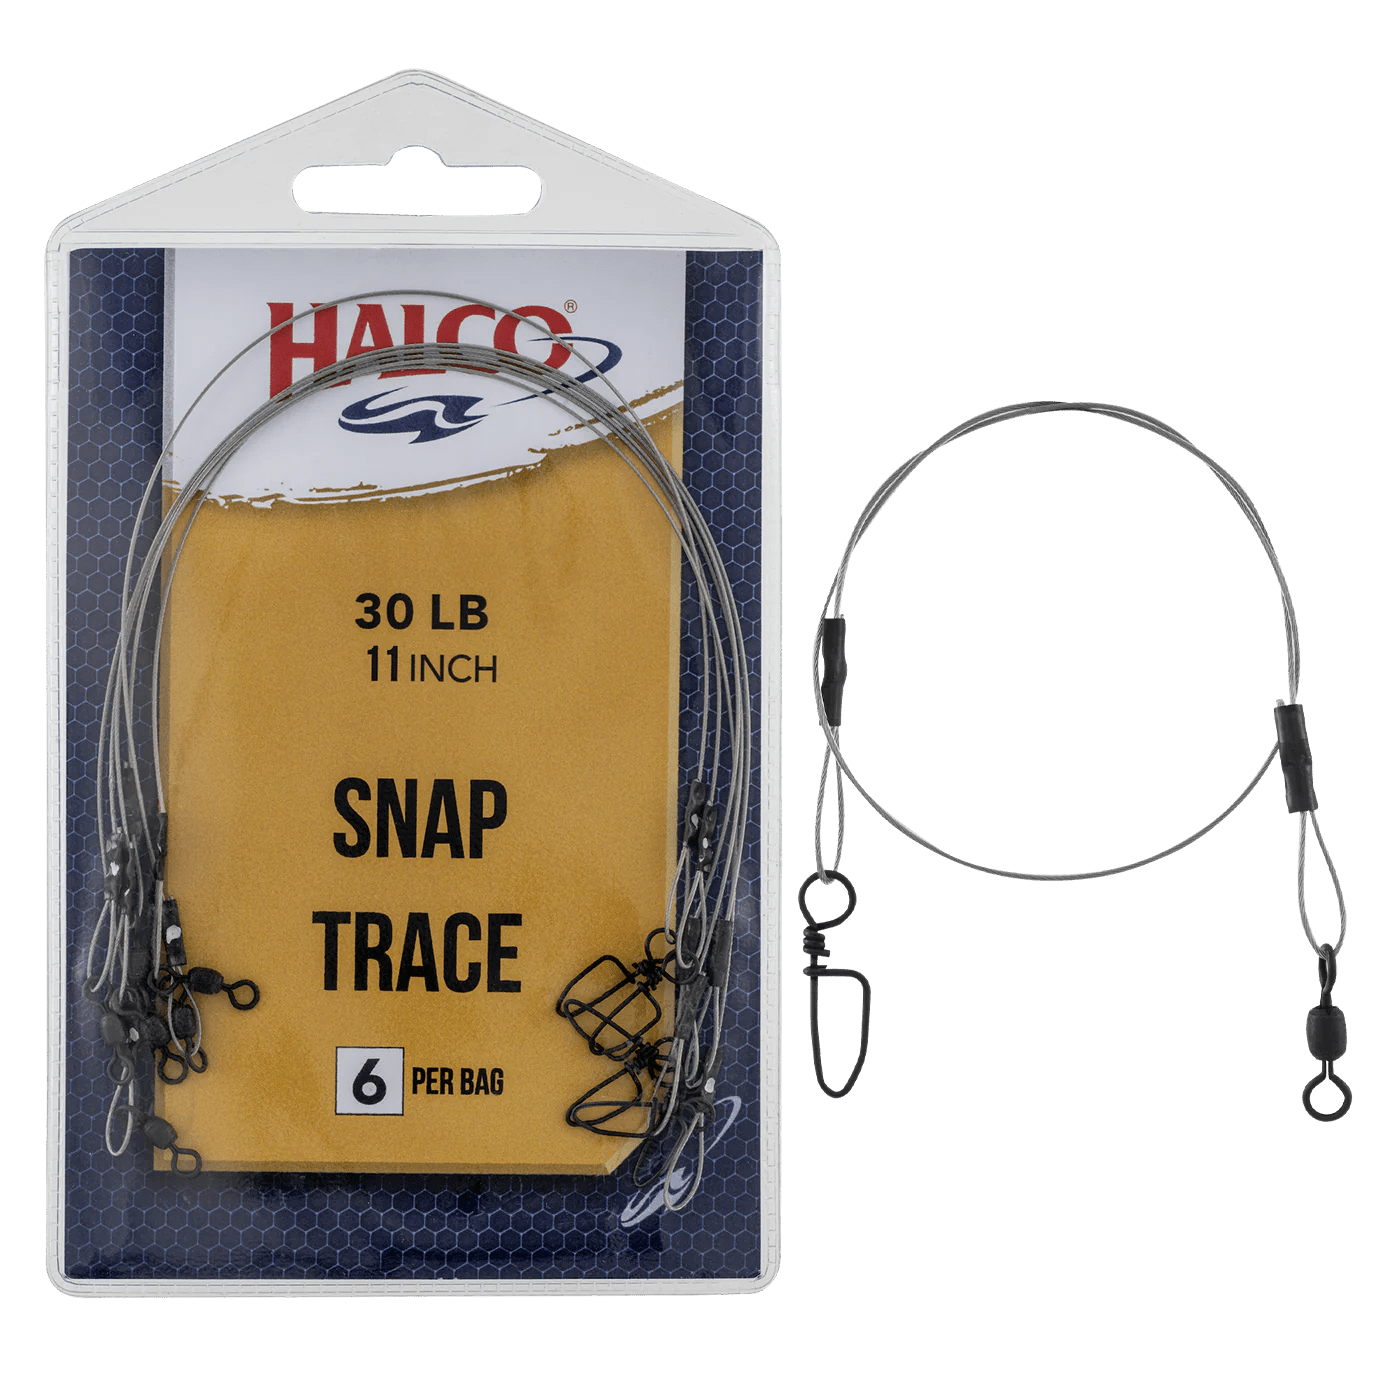 Halco Snap Trace Wire | 100 LB | 60 LB | 6 Pcs Per Pack - fishermanshub80 Lb